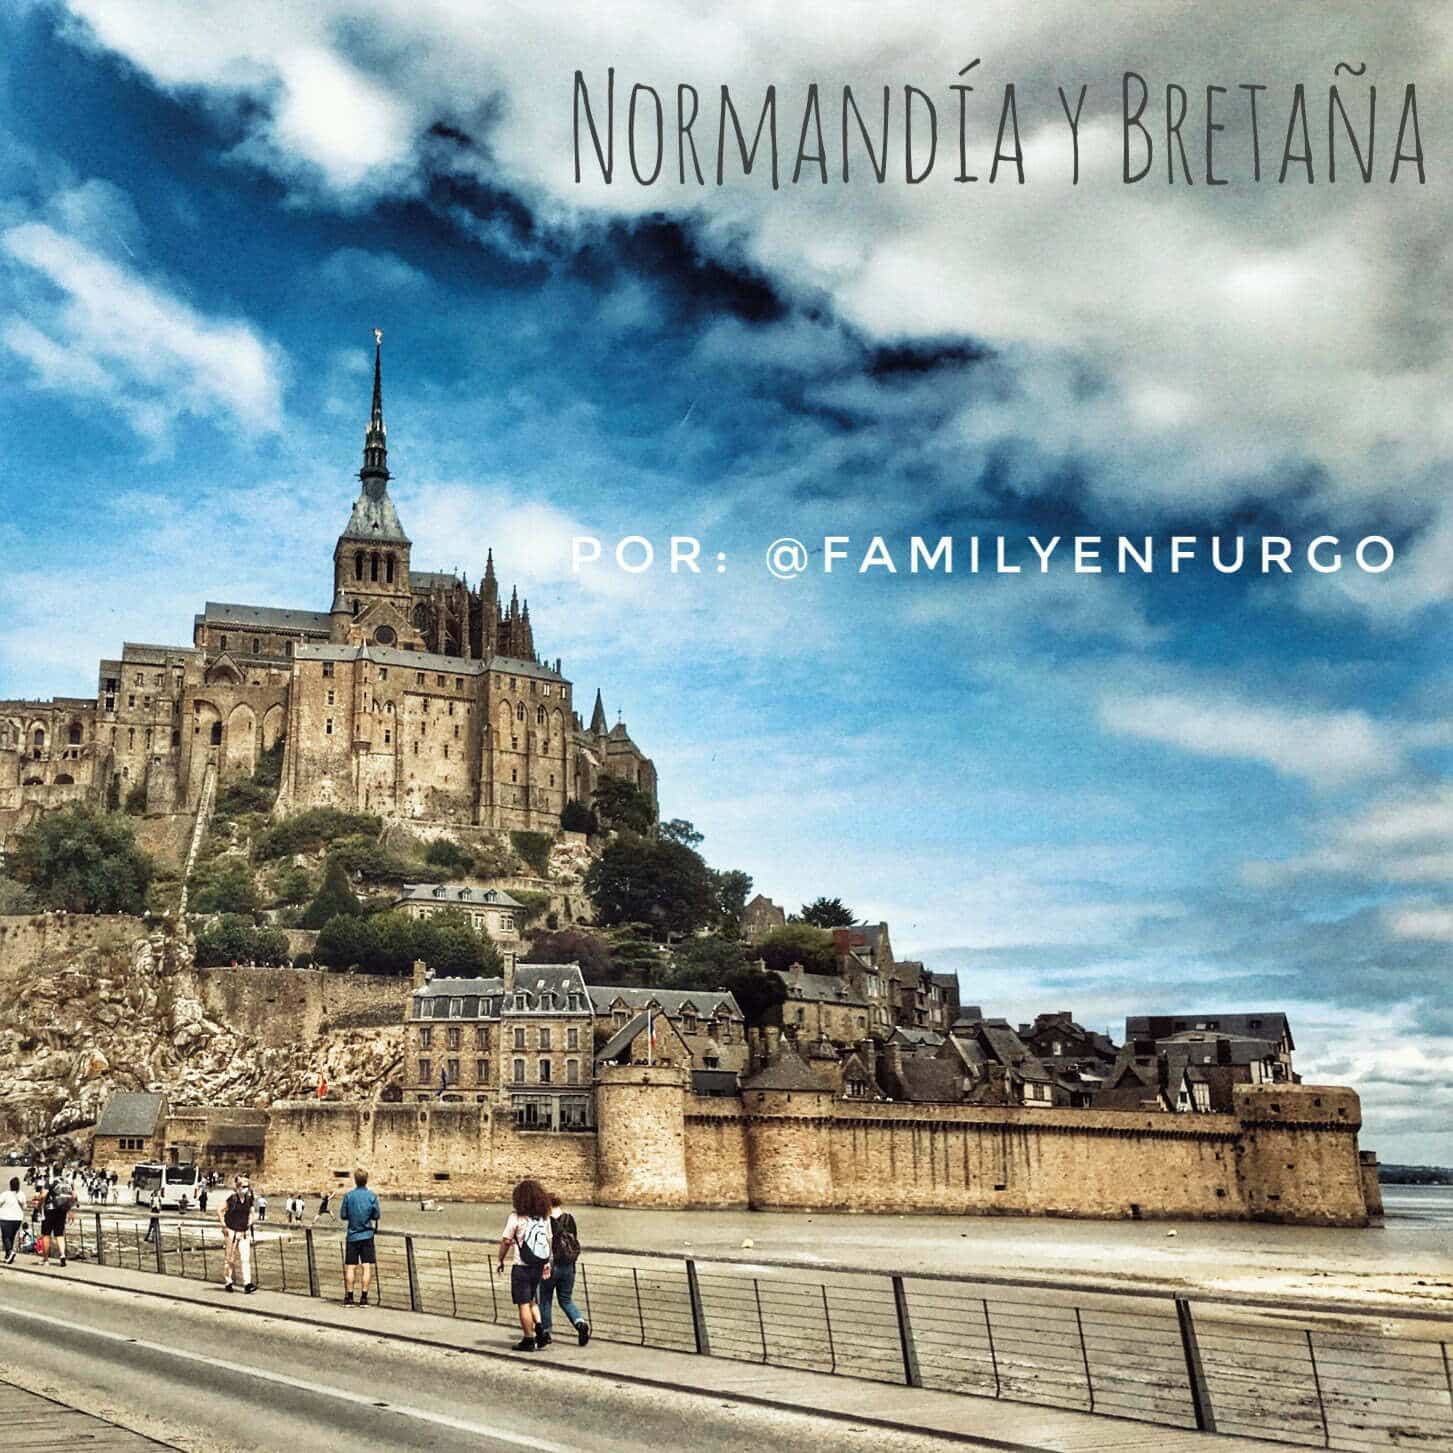 Neste momento você está vendo a Normandia e a Bretanha francesa de van by @familyenfurgo